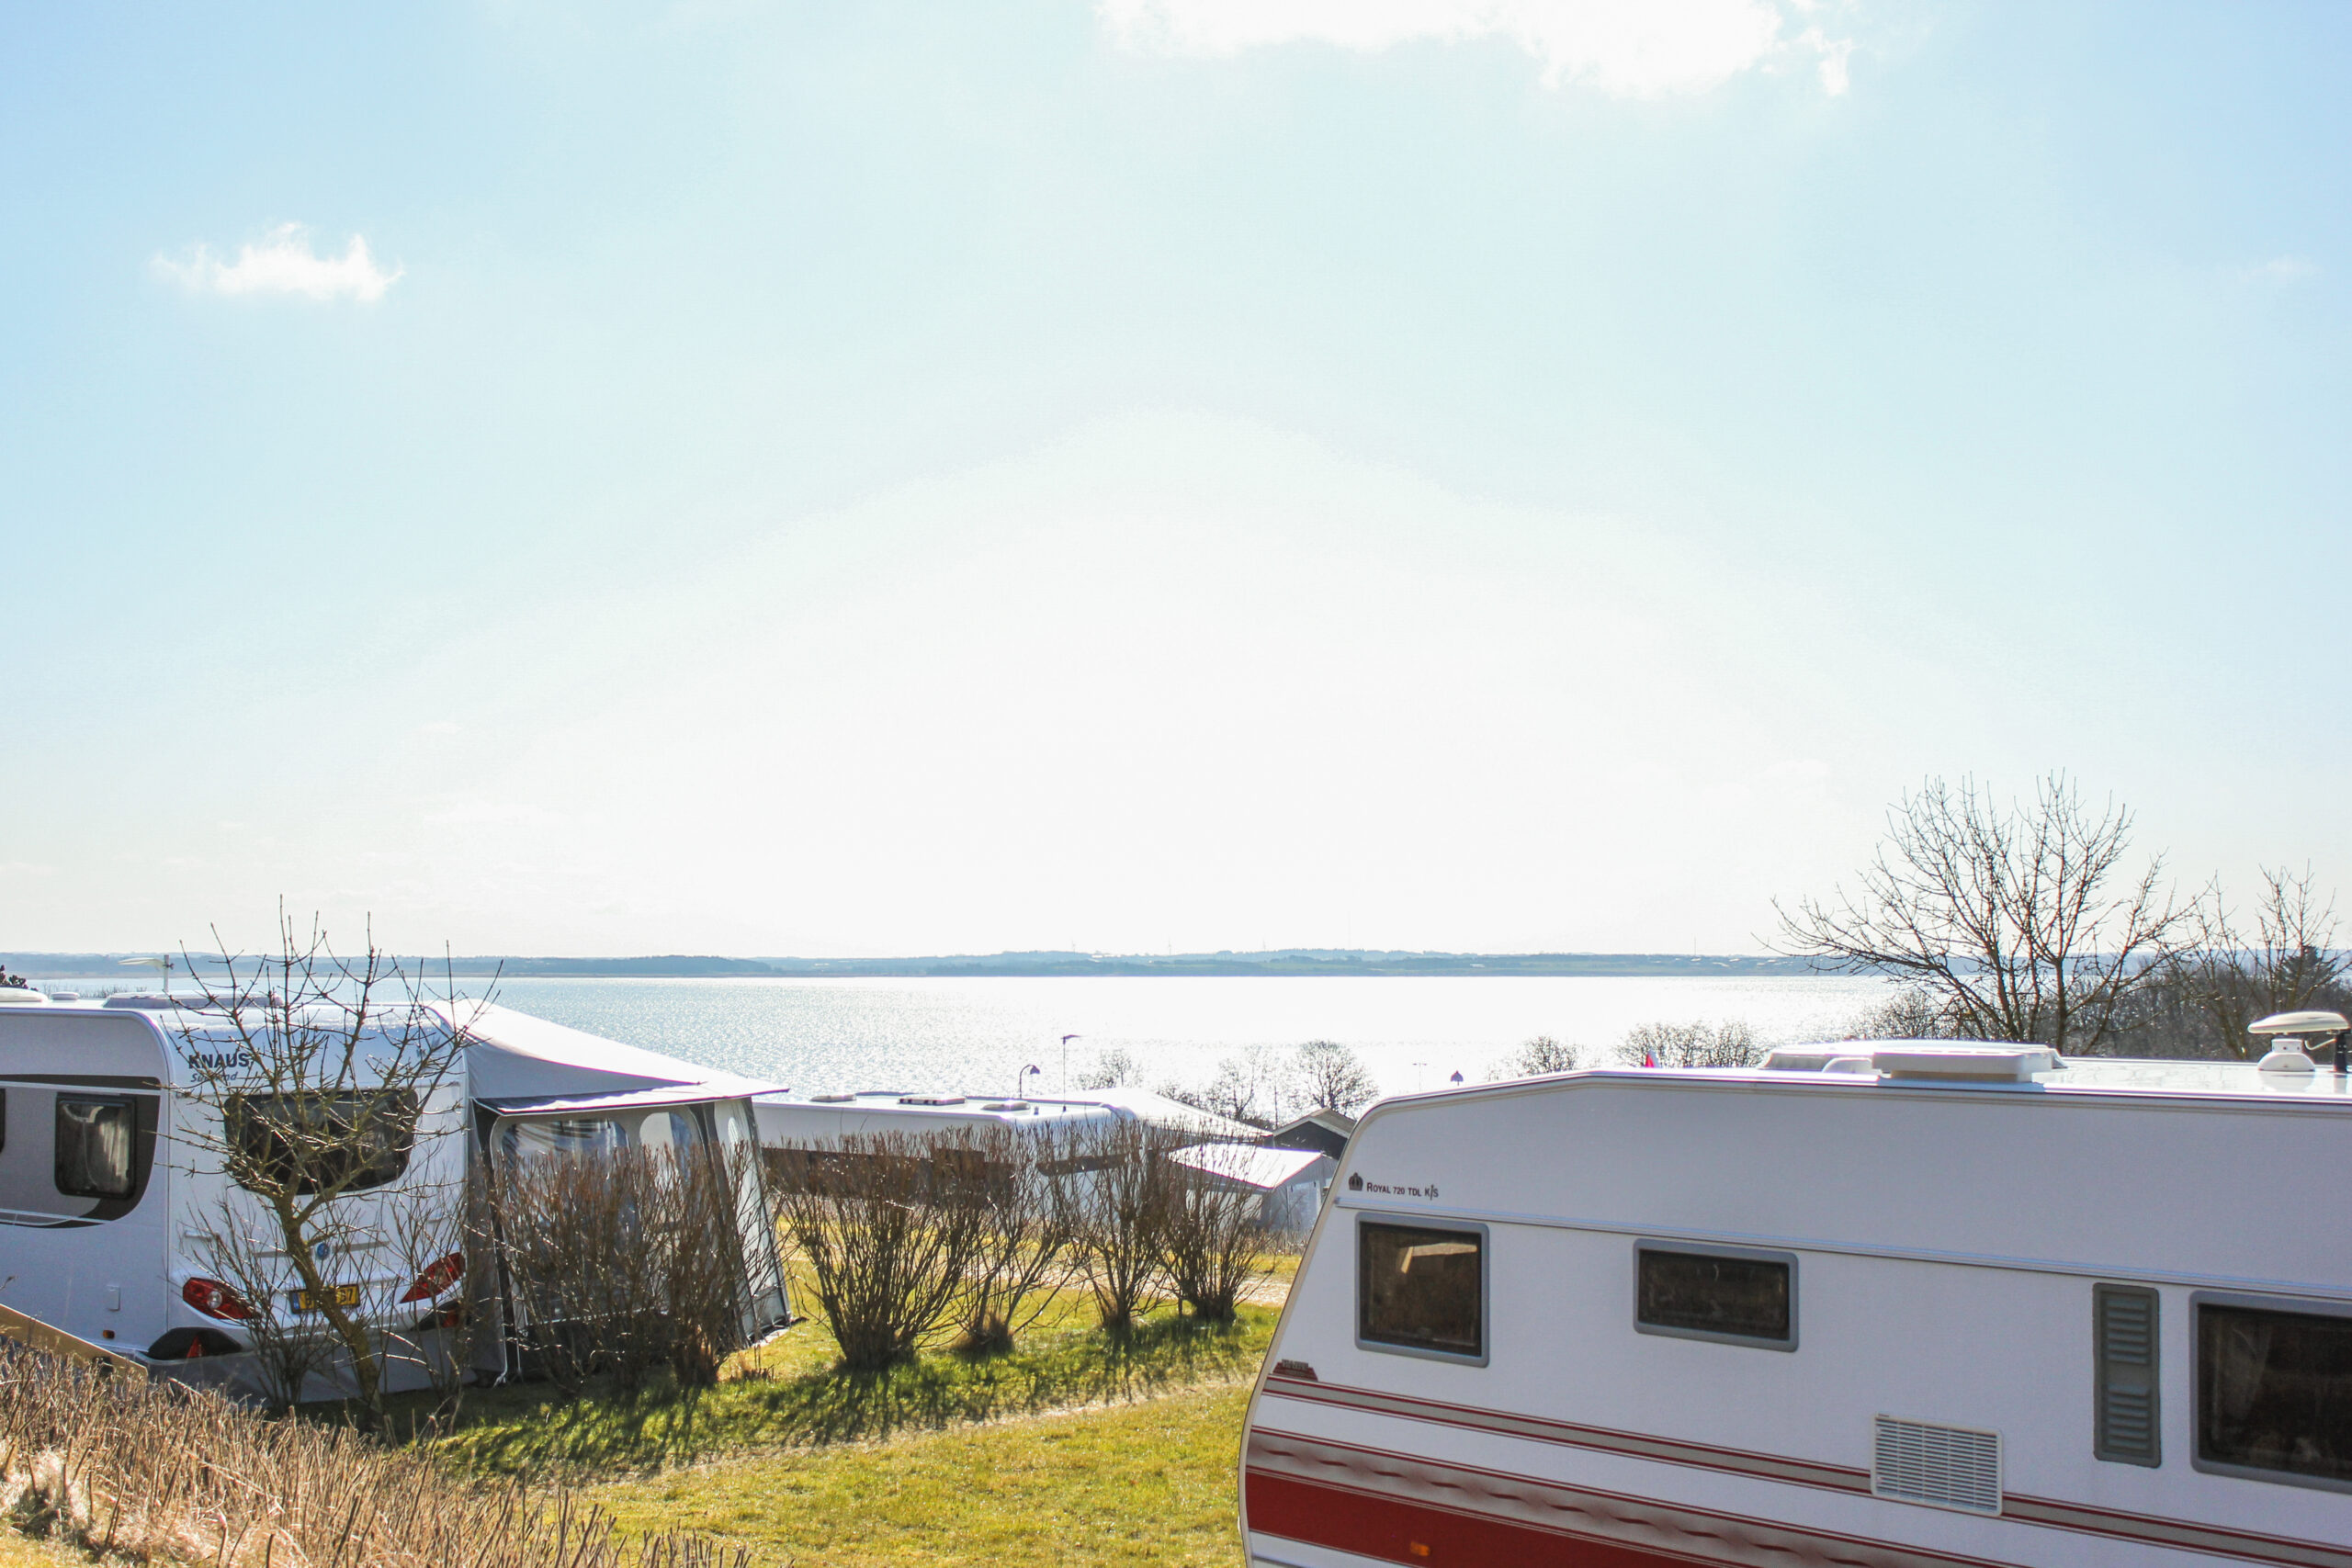 Skive Fjord Camping - tilbud i påske og foråret på camping og hytter. Ferie med udsigt over Limfjorden ved Skive i Jylland tæt på byen og ved vandet